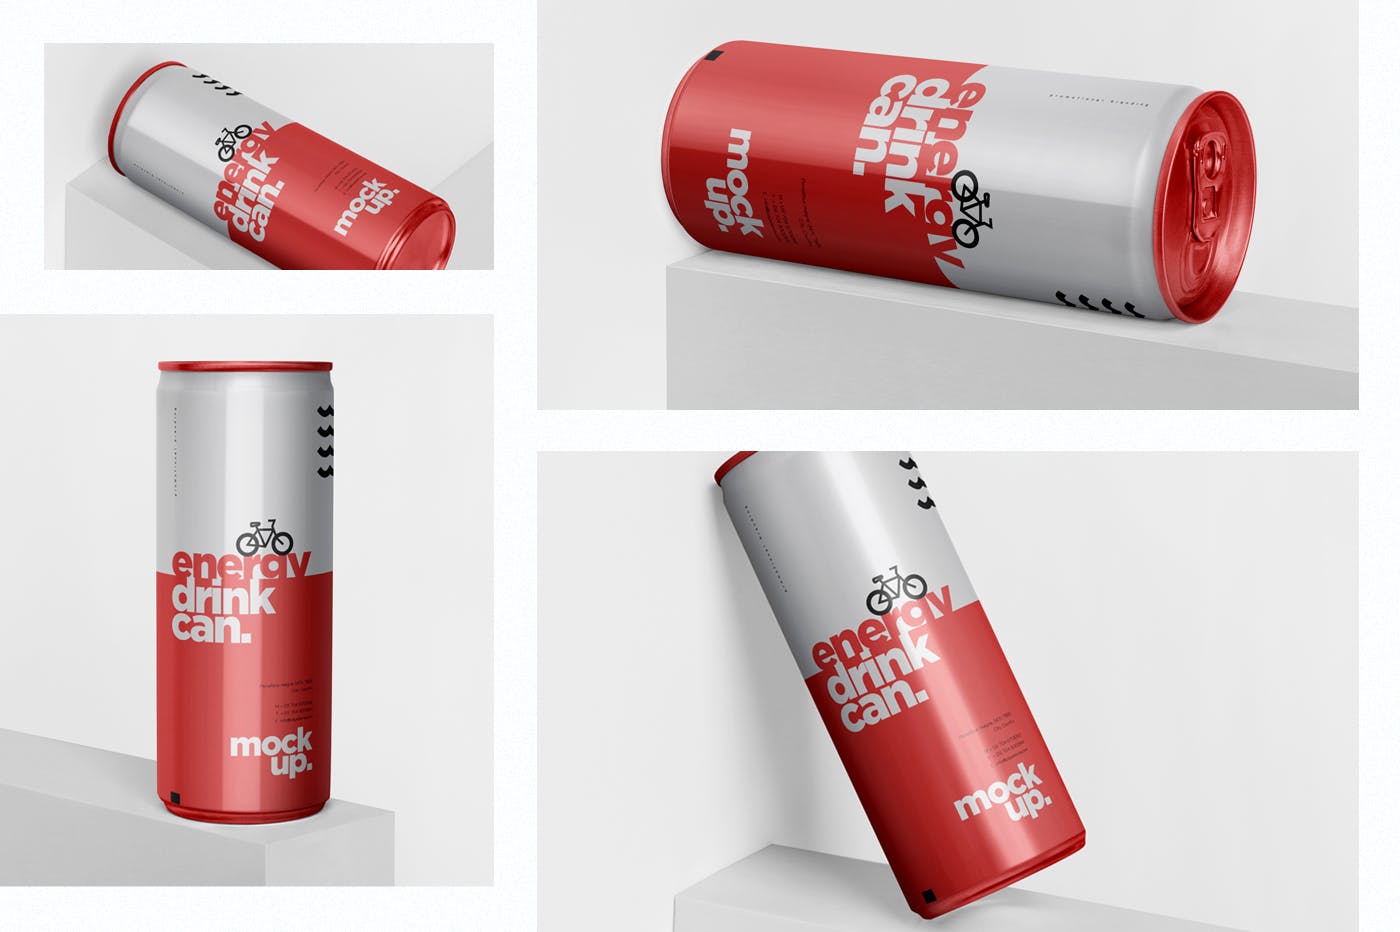 能量饮料易拉罐罐头外观设计第一素材精选模板 Energy Drink Can Mock-Up – 250 ml插图(1)